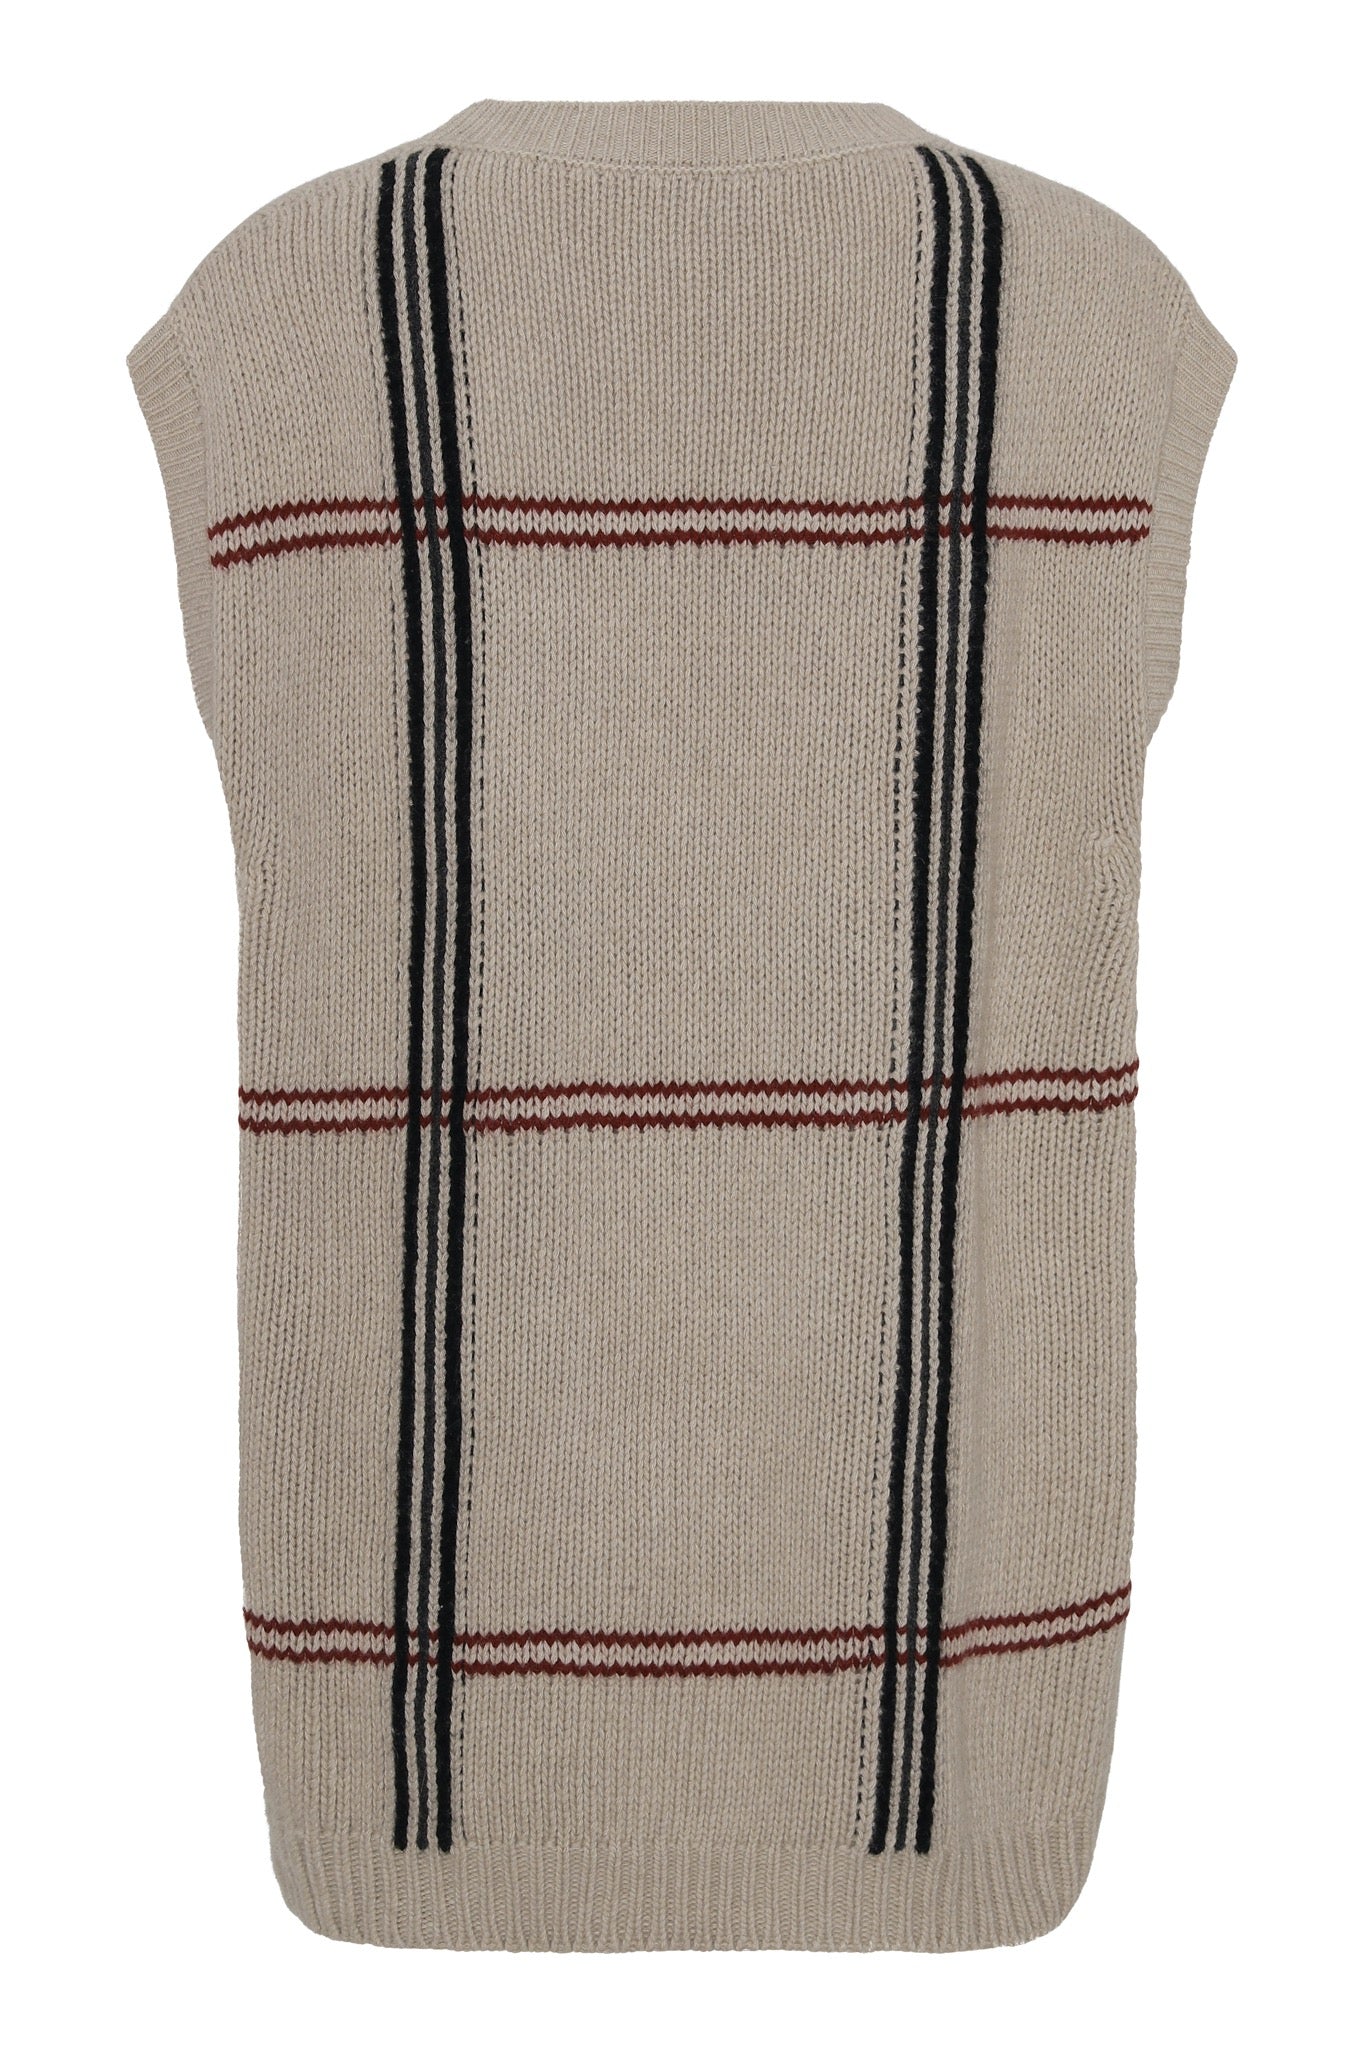 Greta - Oversized väst i återvunnen (recycled) cashmere - Beige med rutigt mönster